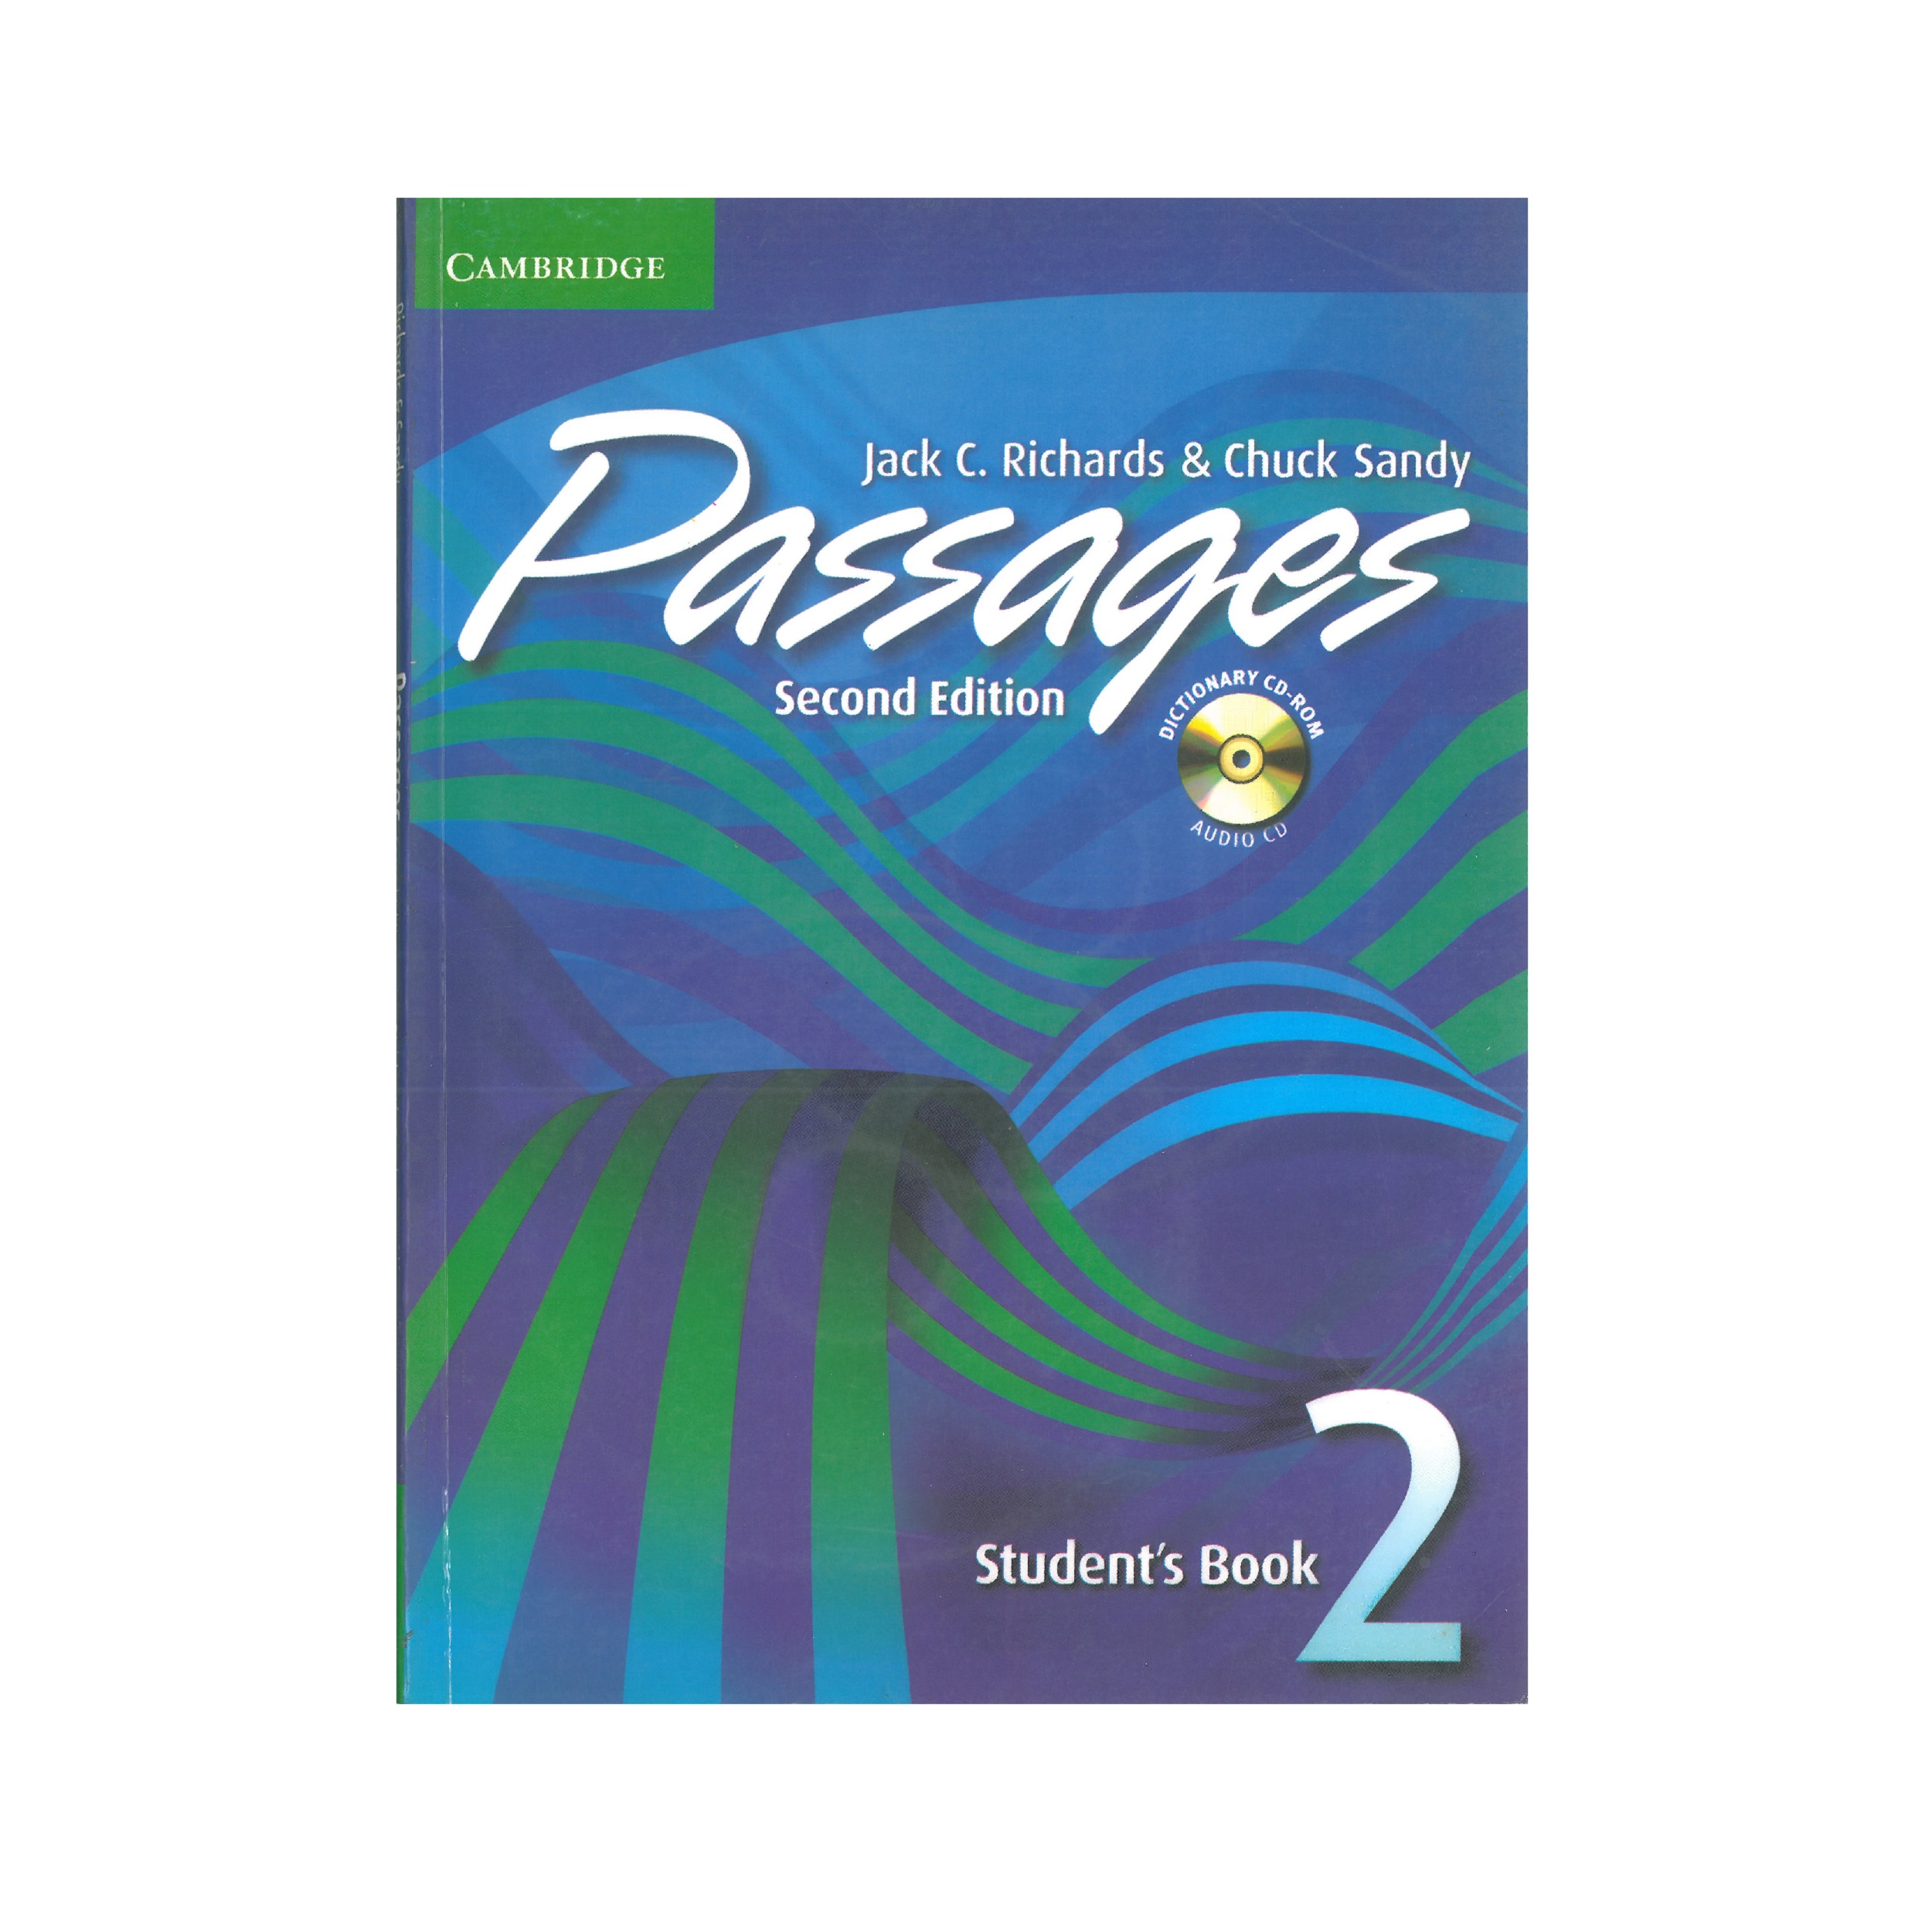 آنباکس کتاب Passages 2 Students Book Second Edition اثر جمعی از نویسندگان نشر Oxford توسط زینب احمدنیا در تاریخ ۰۴ آذر ۱۳۹۹